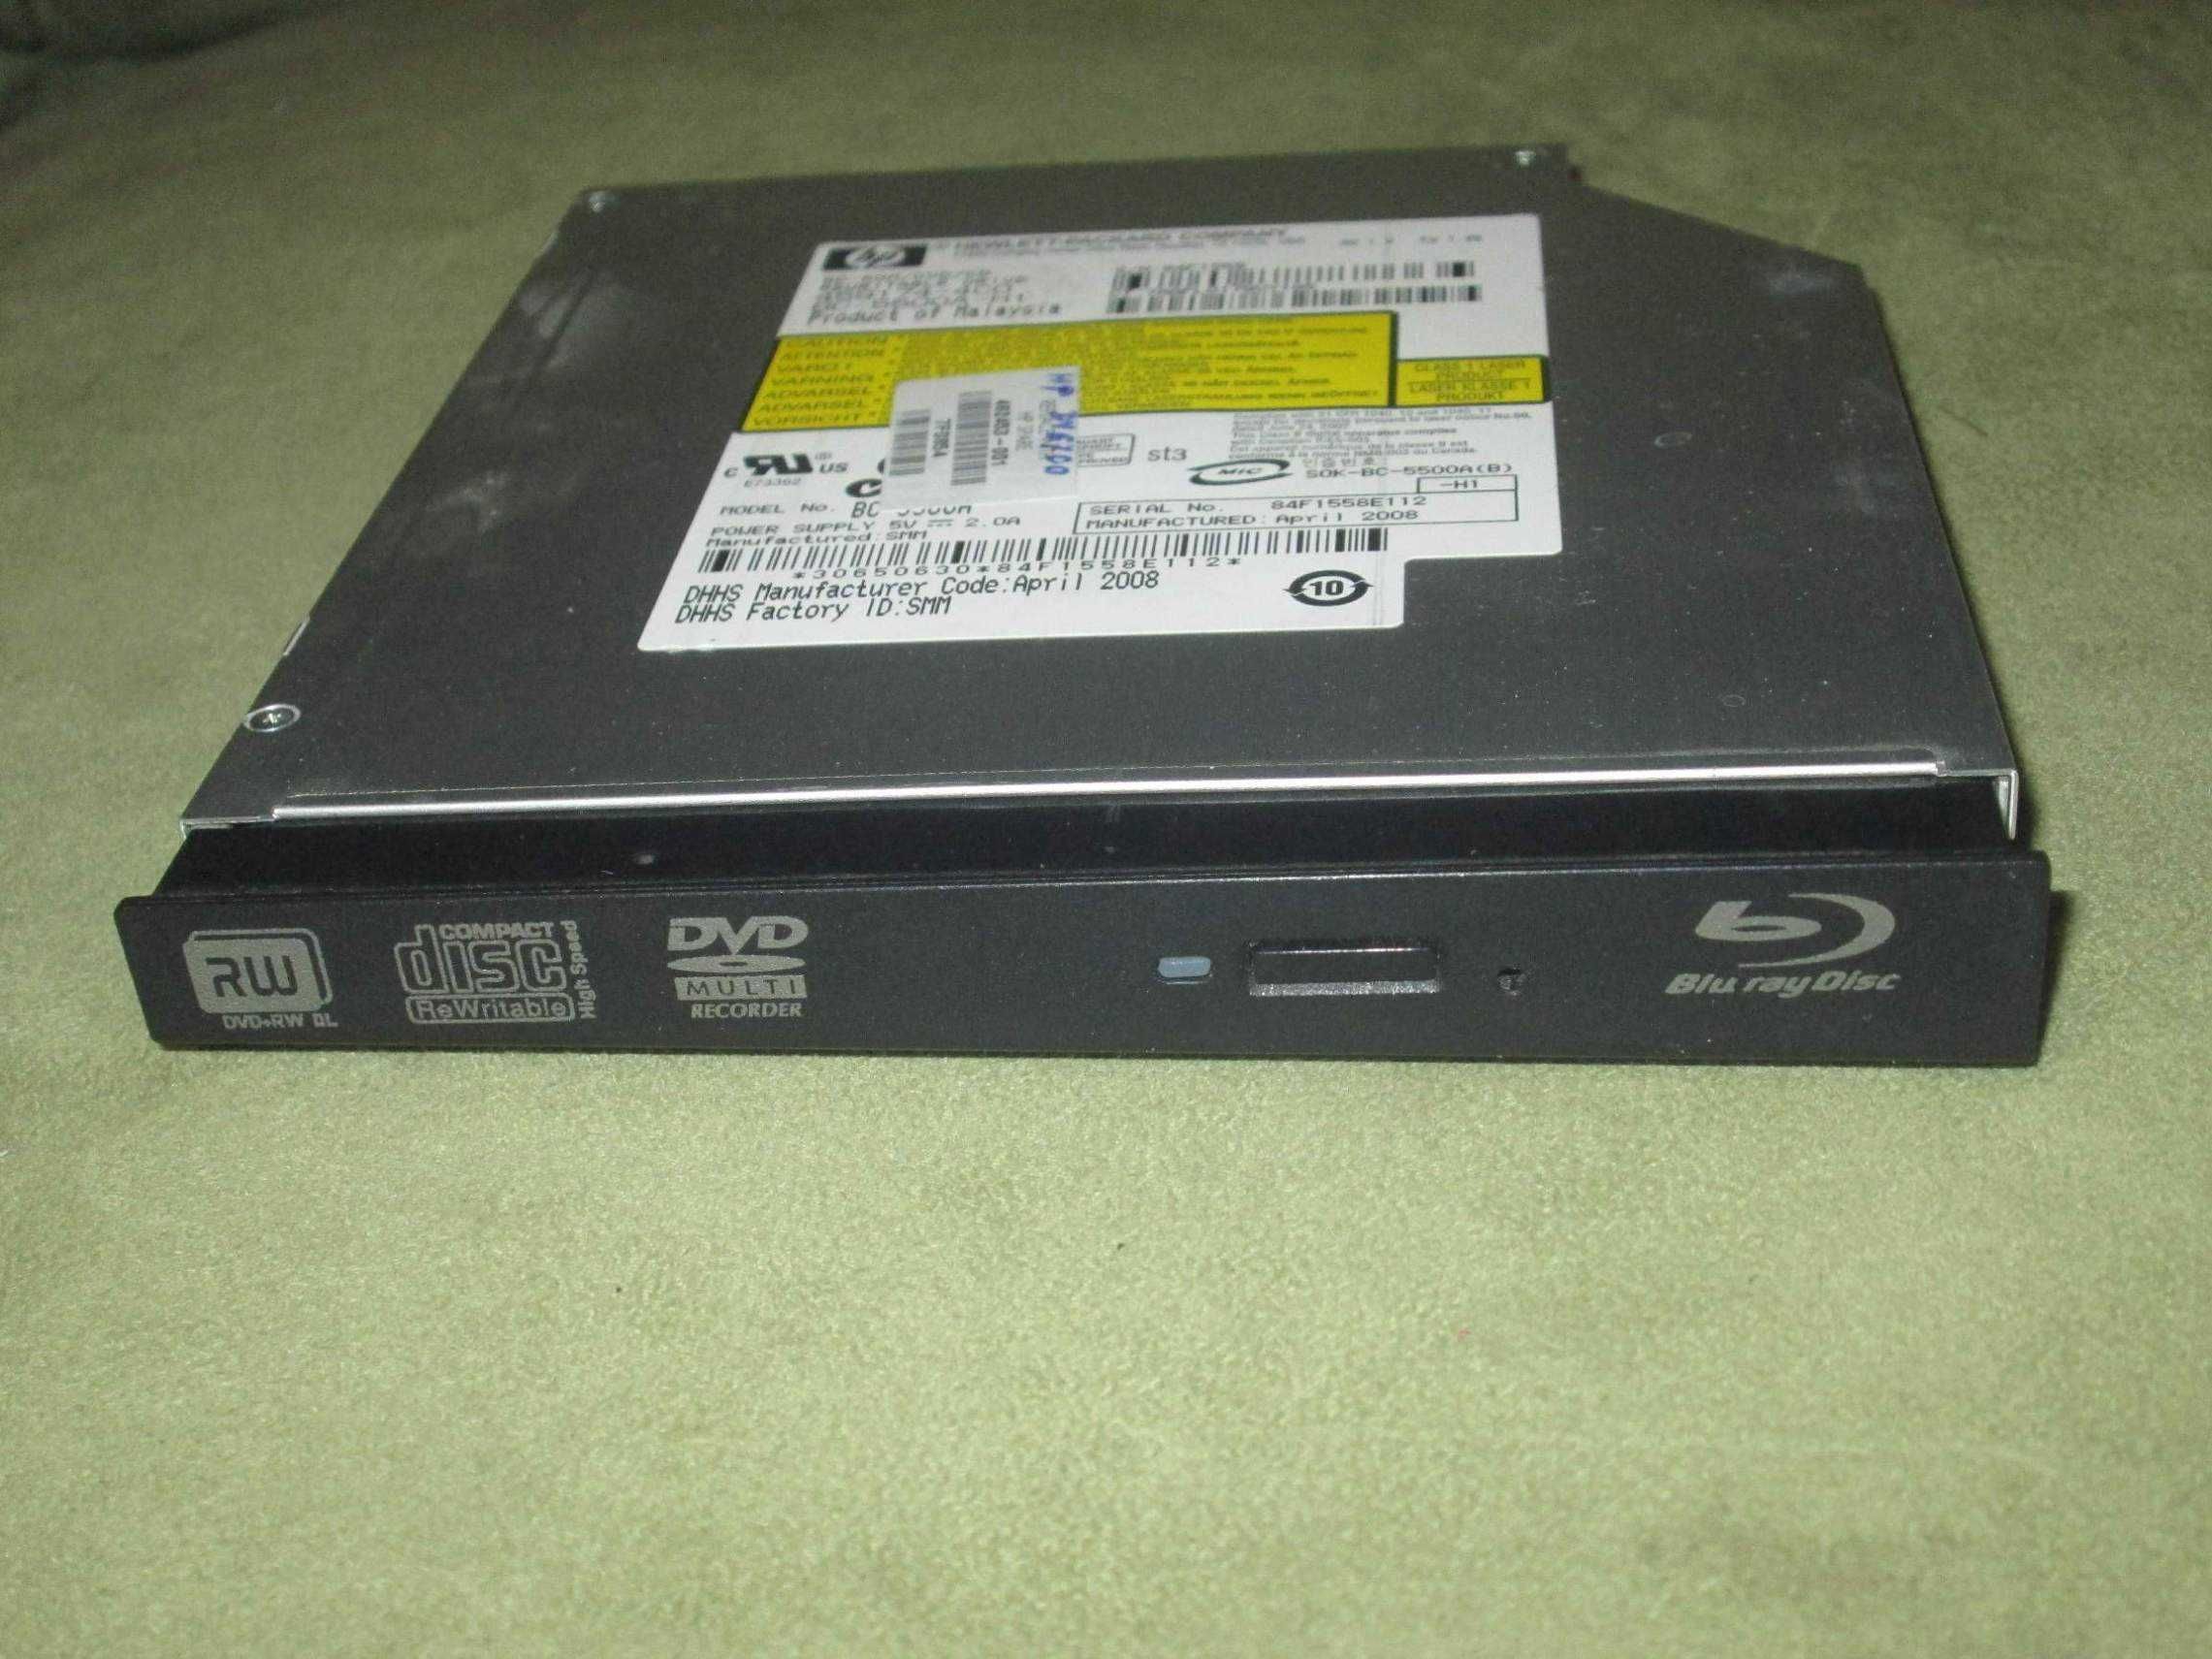 HP BD-ROM, napęd bluray, Blu ray Disc BC-5500A